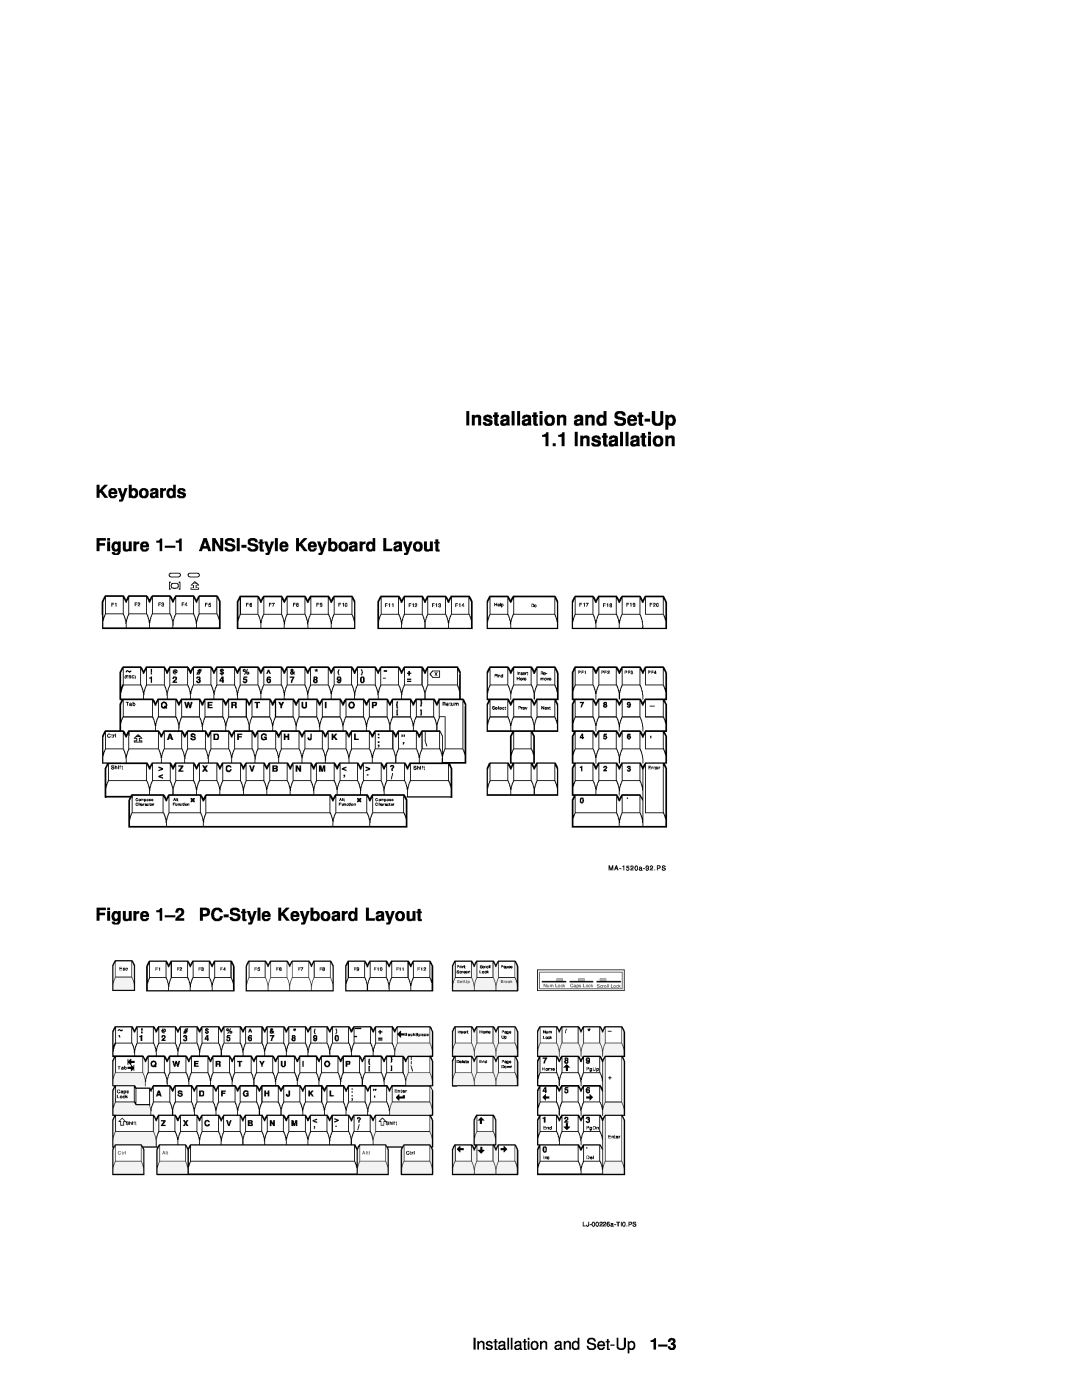 IBM WS525 Keyboards -1 ANSI-Style Keyboard Layout, 2 PC-Style Keyboard Layout, Installation and Set-Up 1.1 Installation 